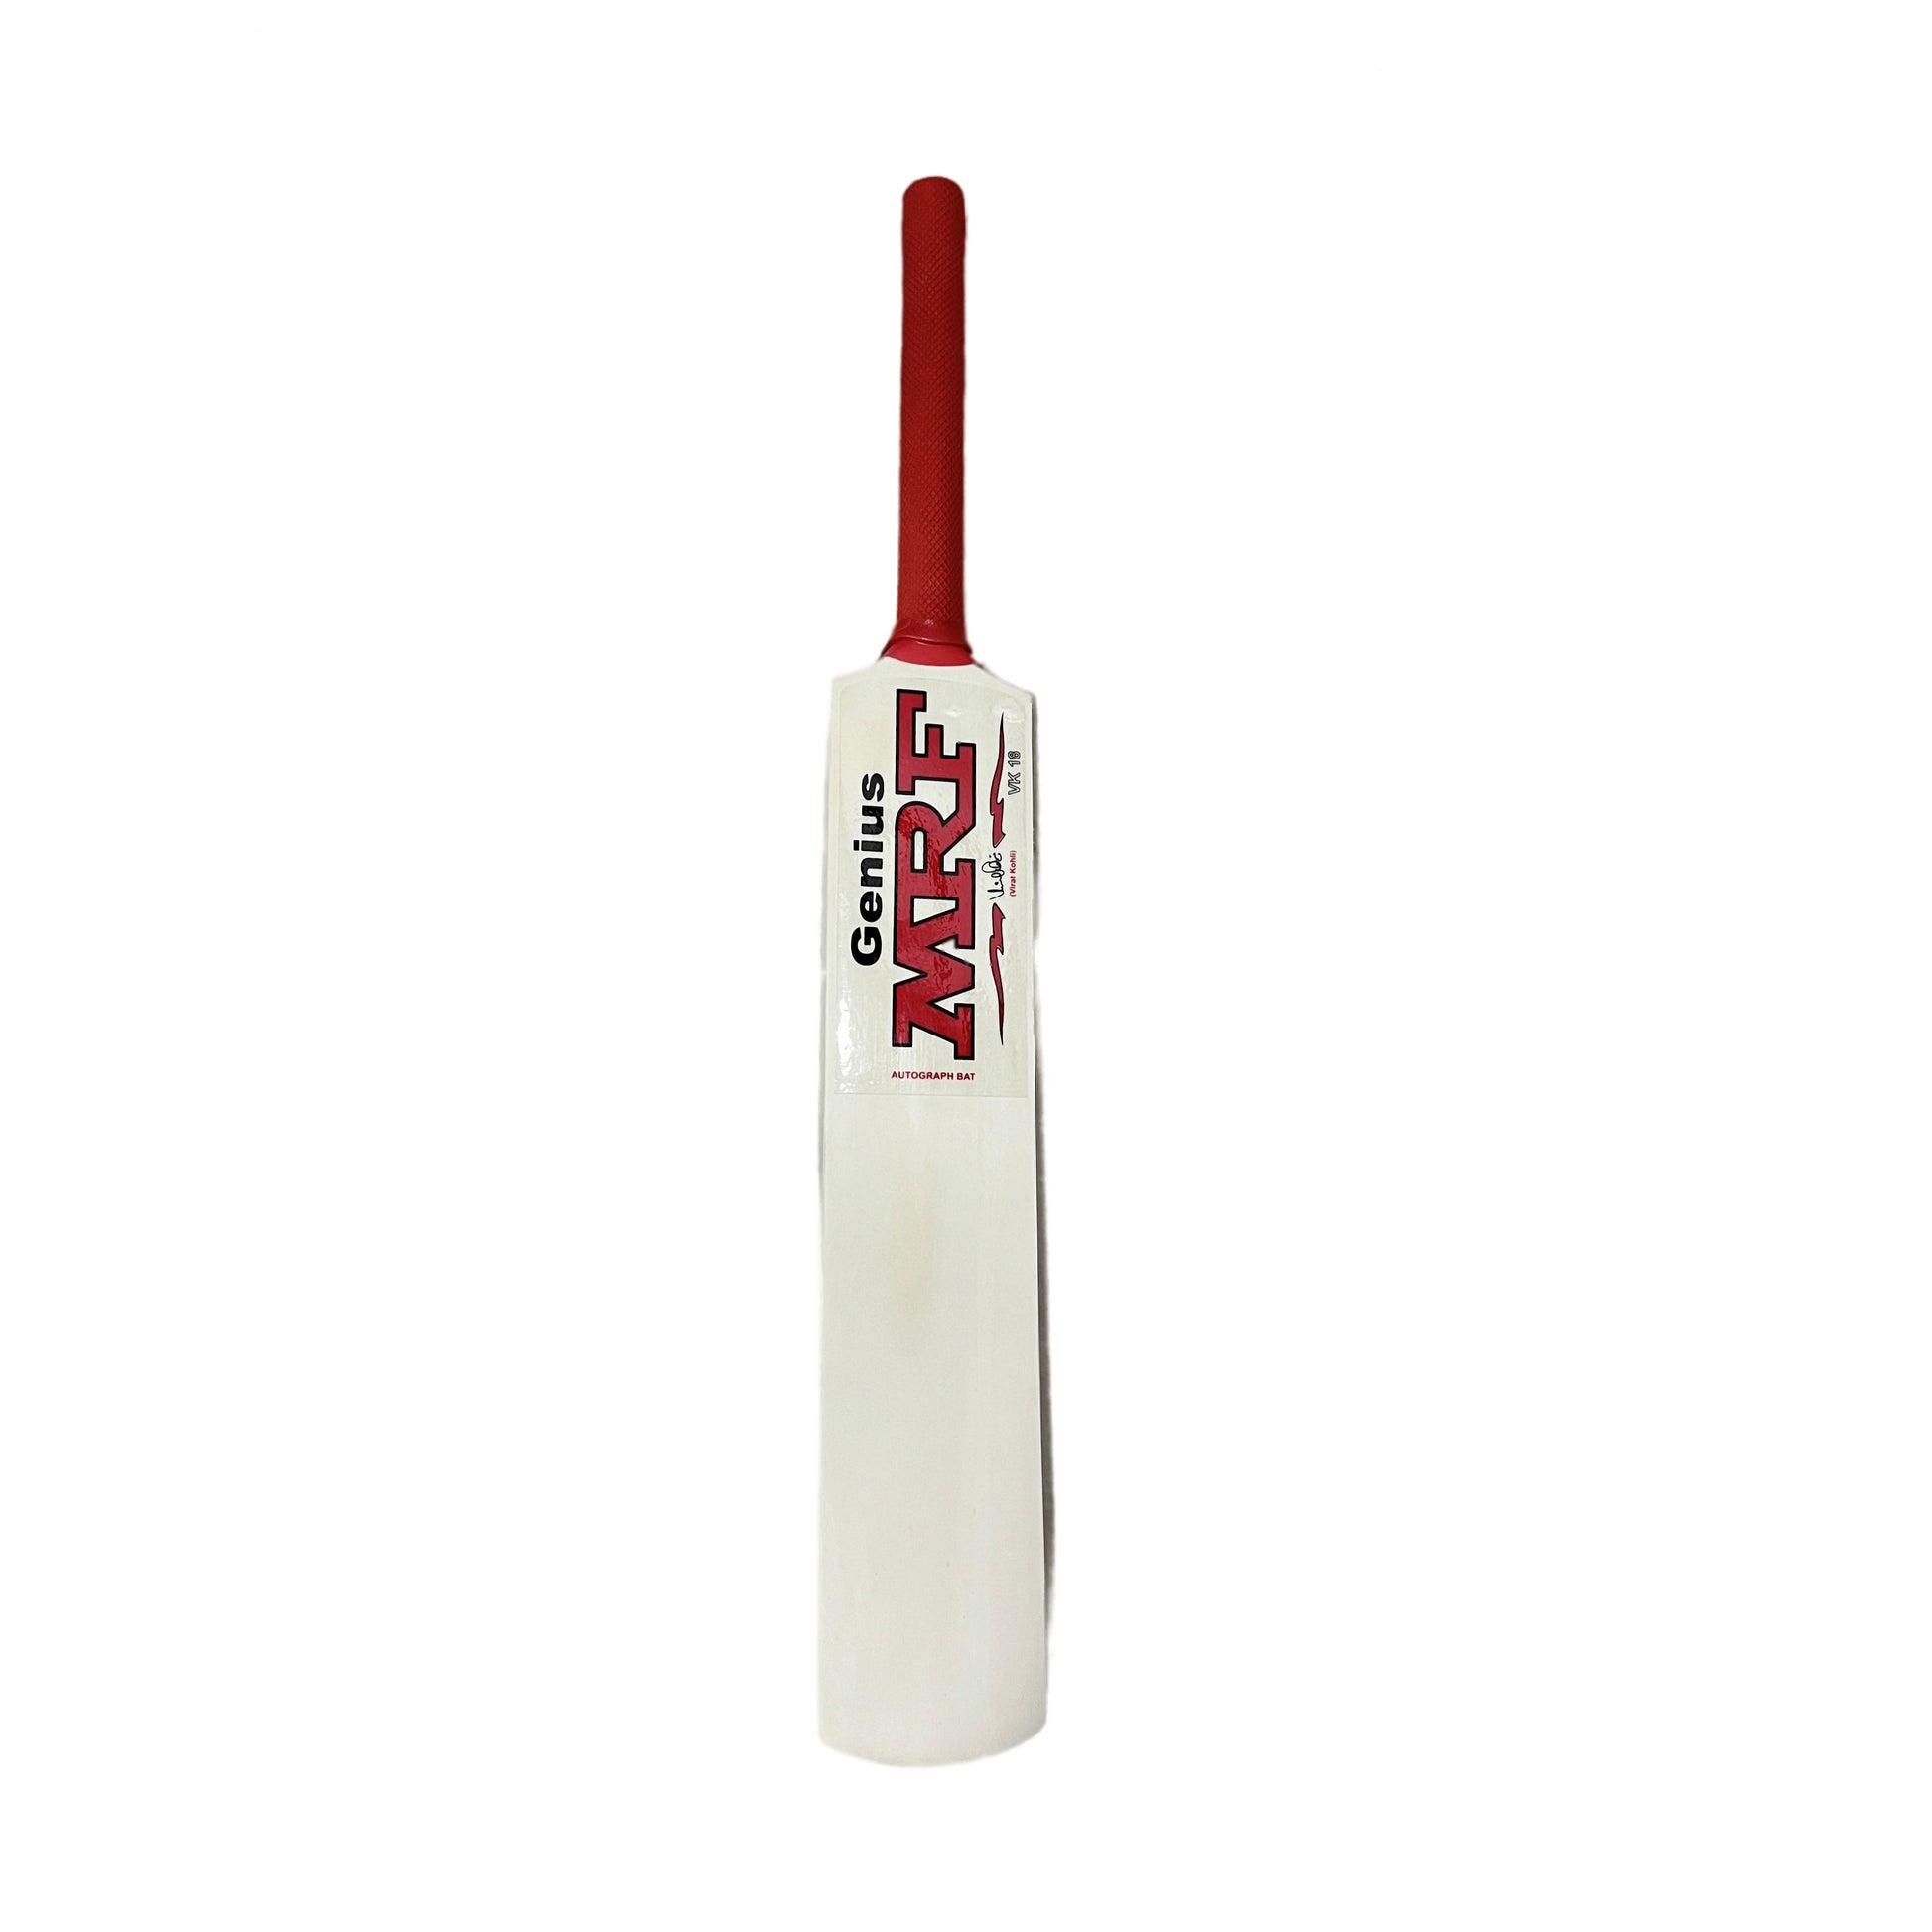 MRF Autograph Mini Cricket Bat 18"